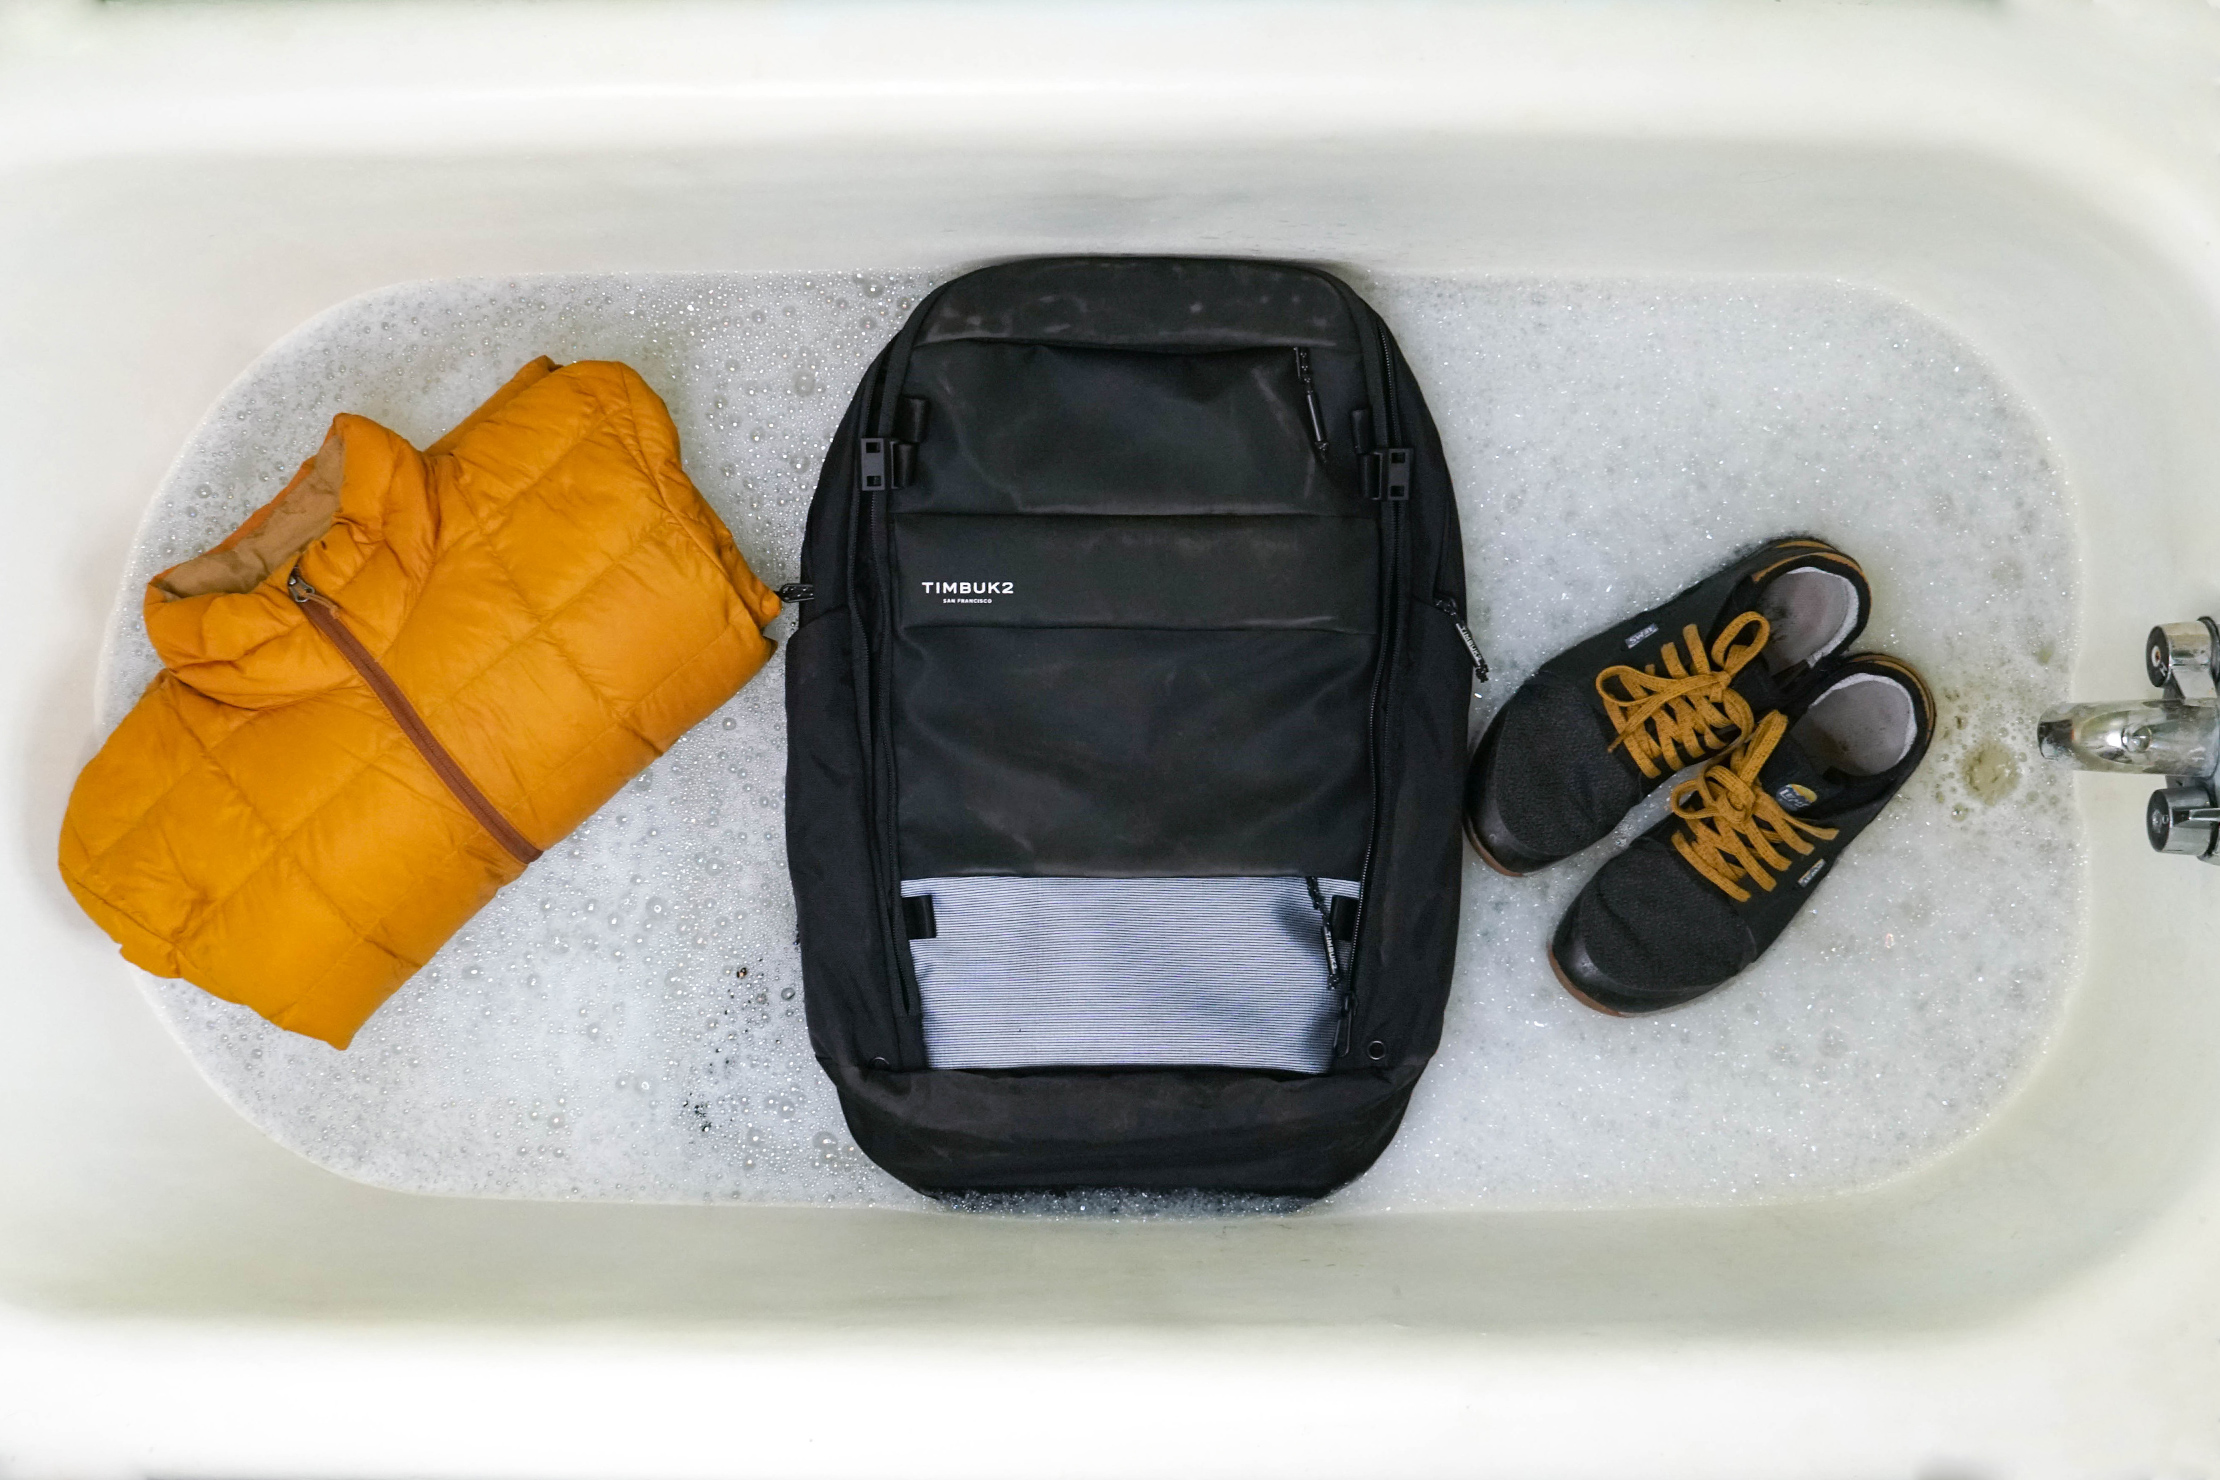 How do I wash my mini backpack? I think it's made of neoprene : r